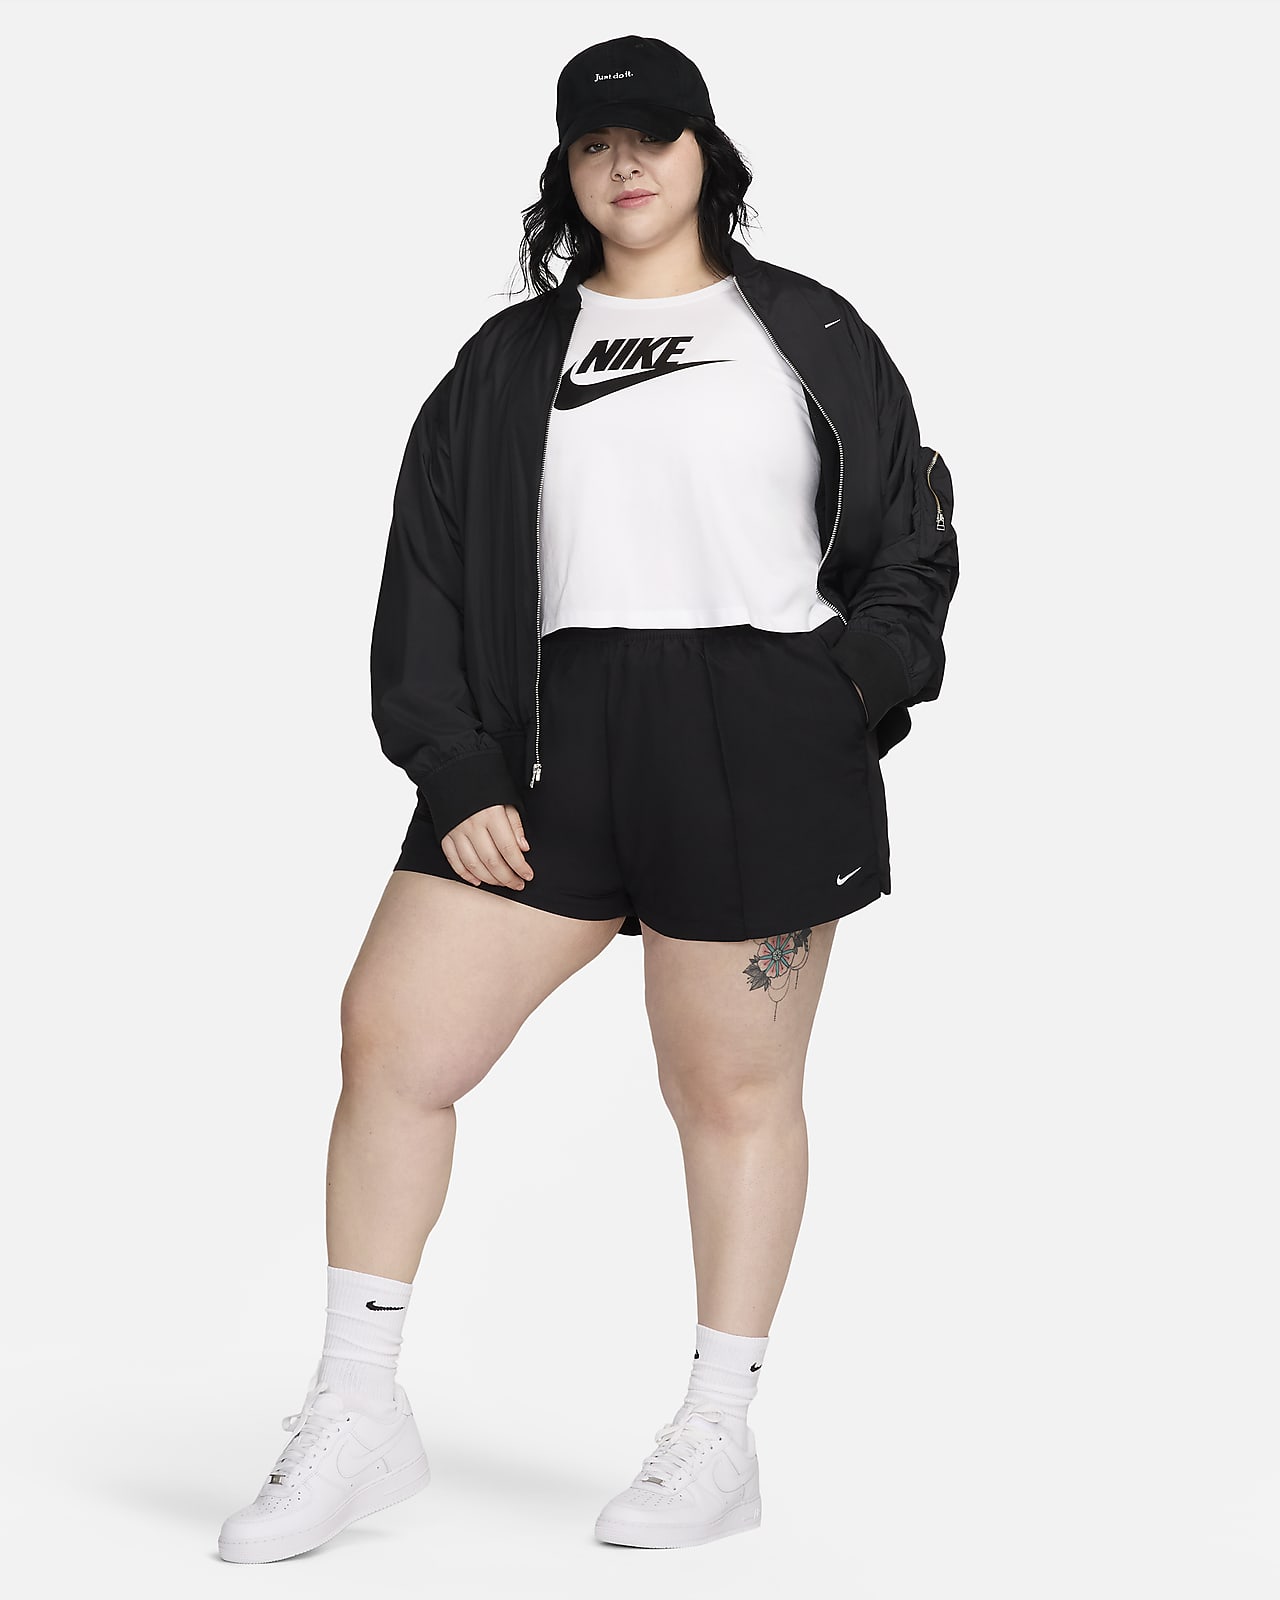 Sportswear Plus Size Clothing. Nike IN